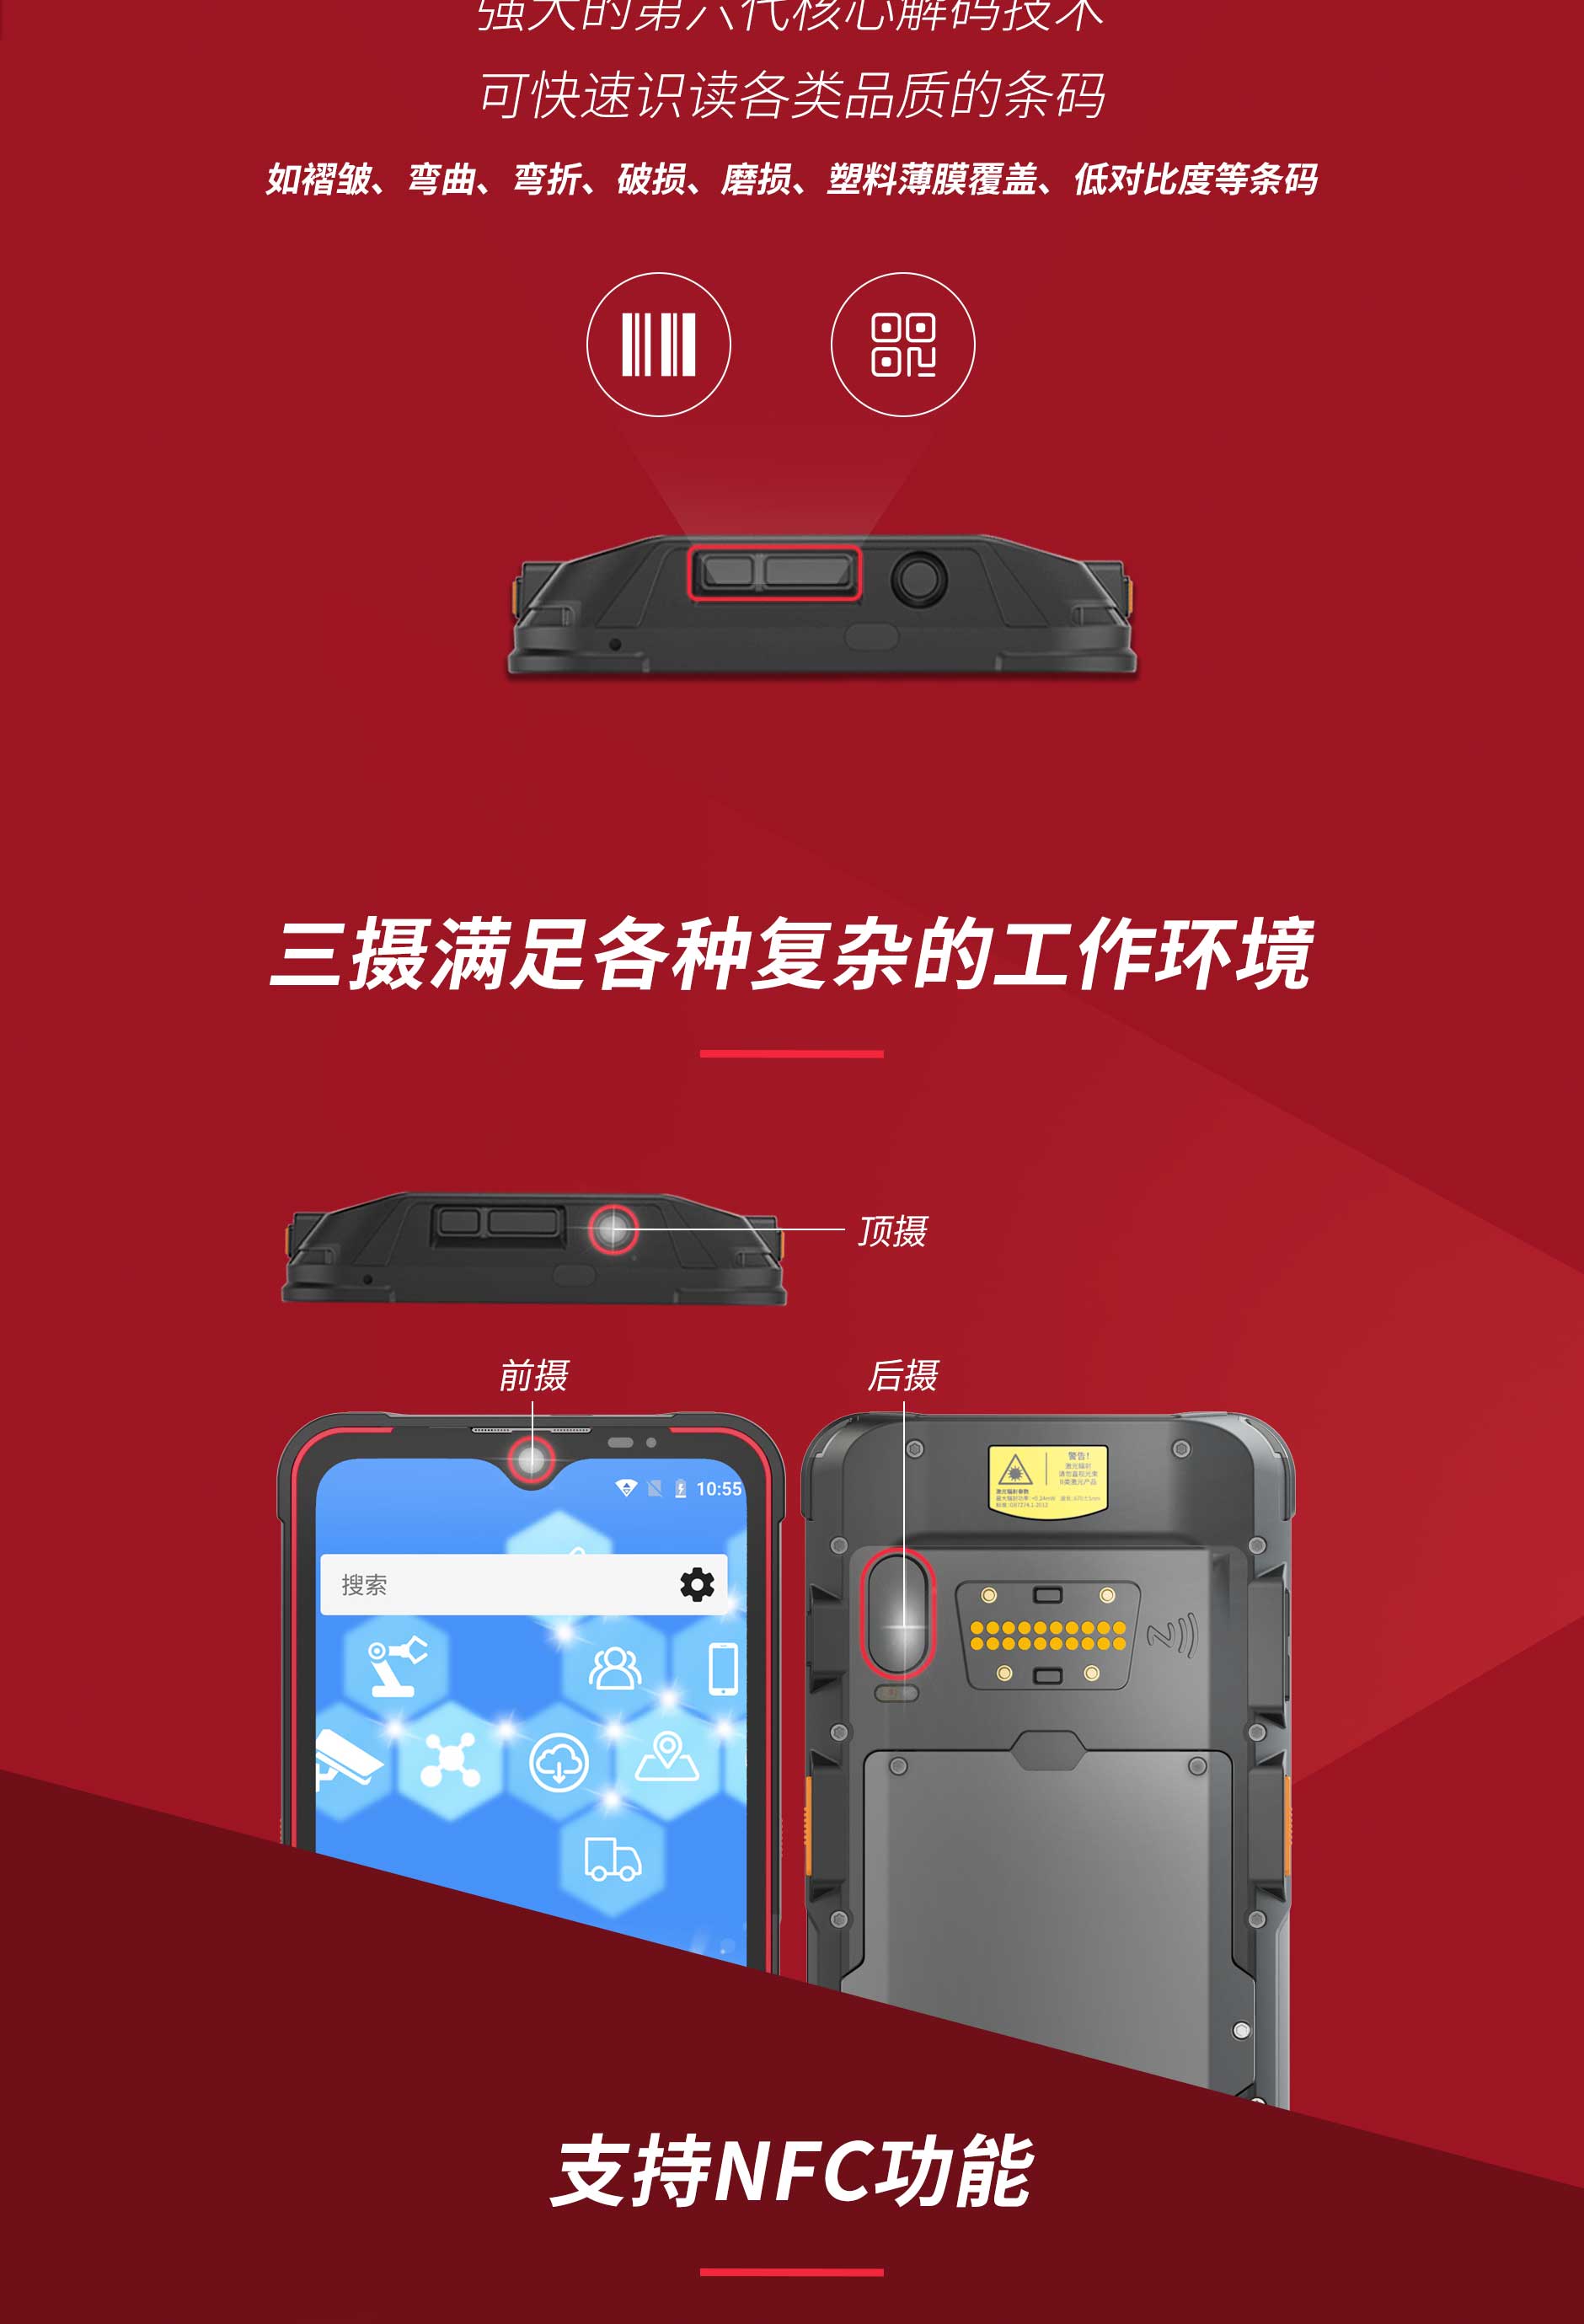 5G 防爆手机：为河北省居民生命财产安全保驾护航的创新产品